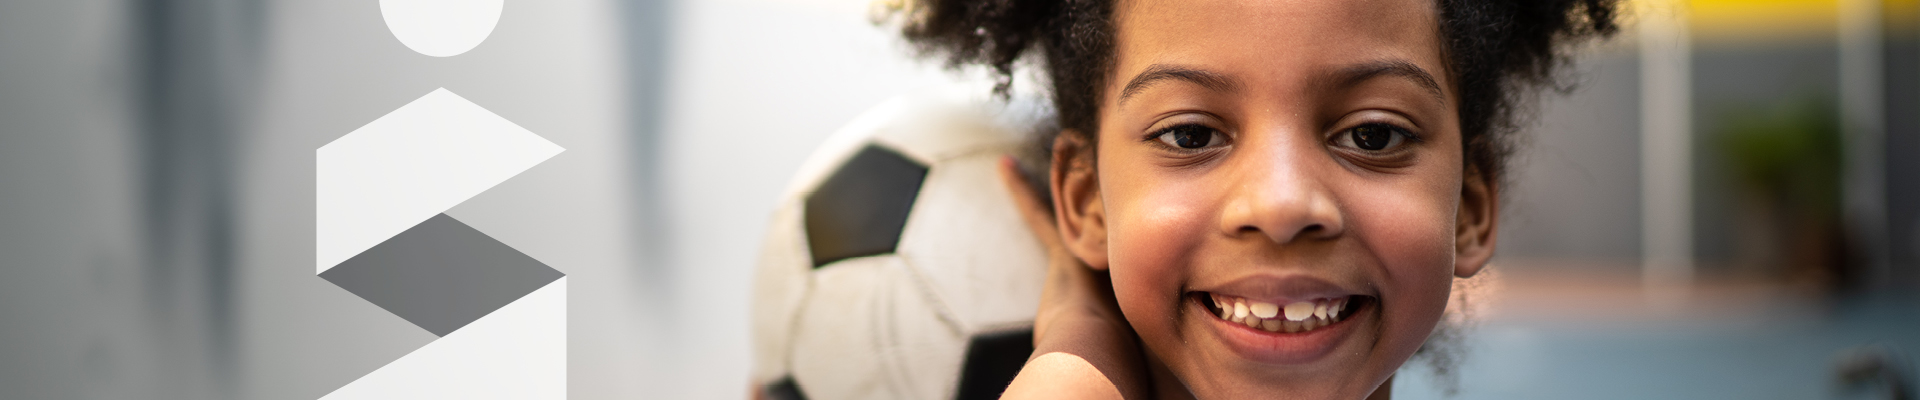 Jeune fille souriante tenant un ballon de soccer